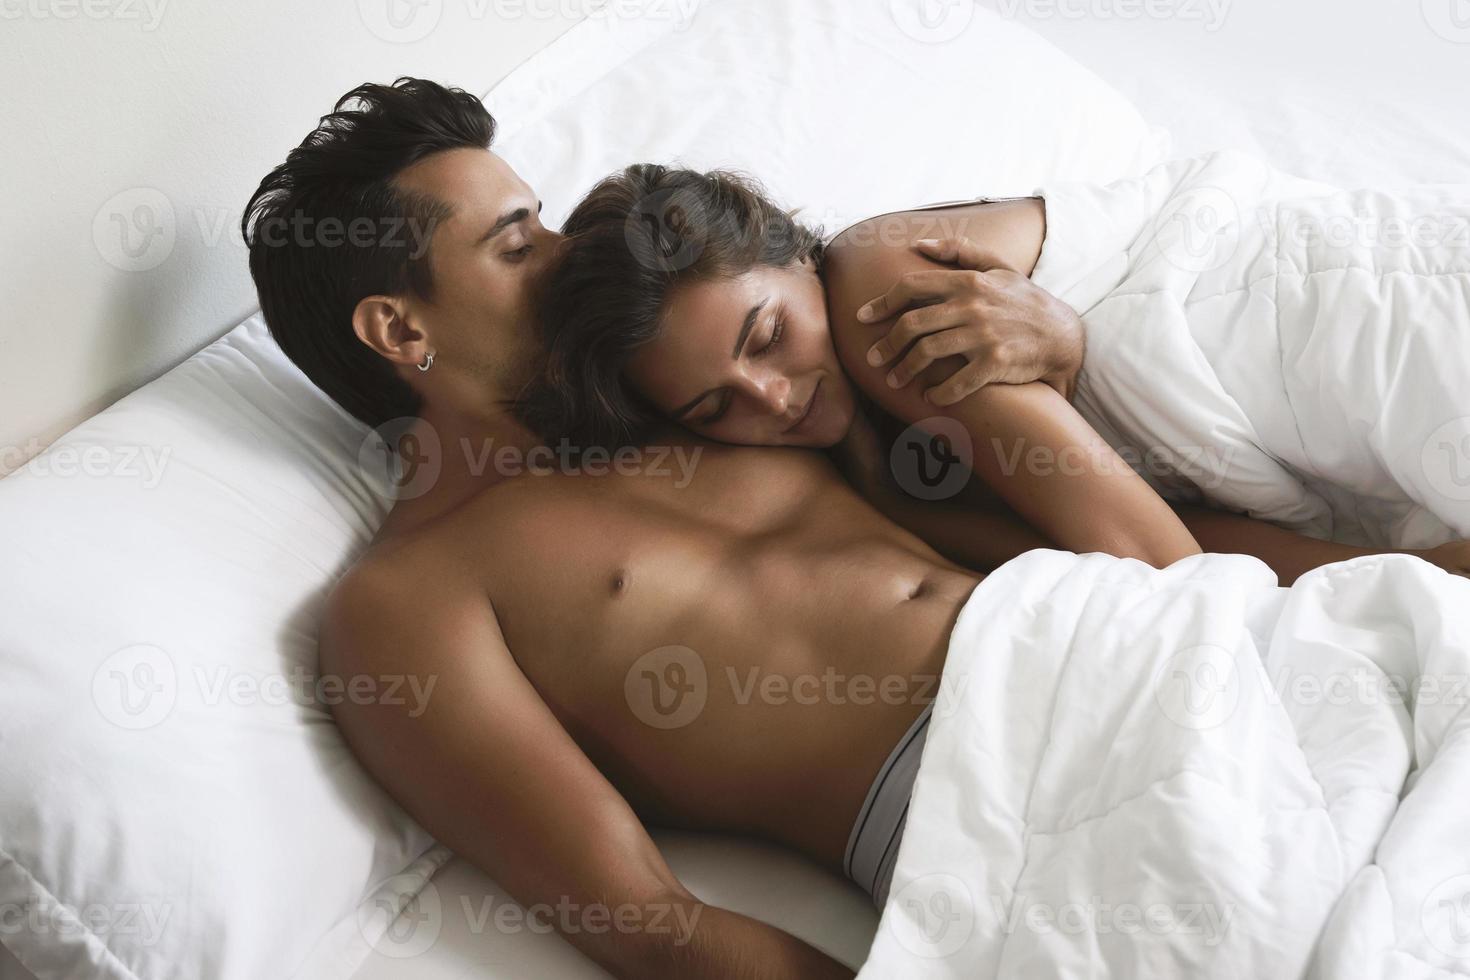 jovem casal lindo está deitado na cama de manhã foto